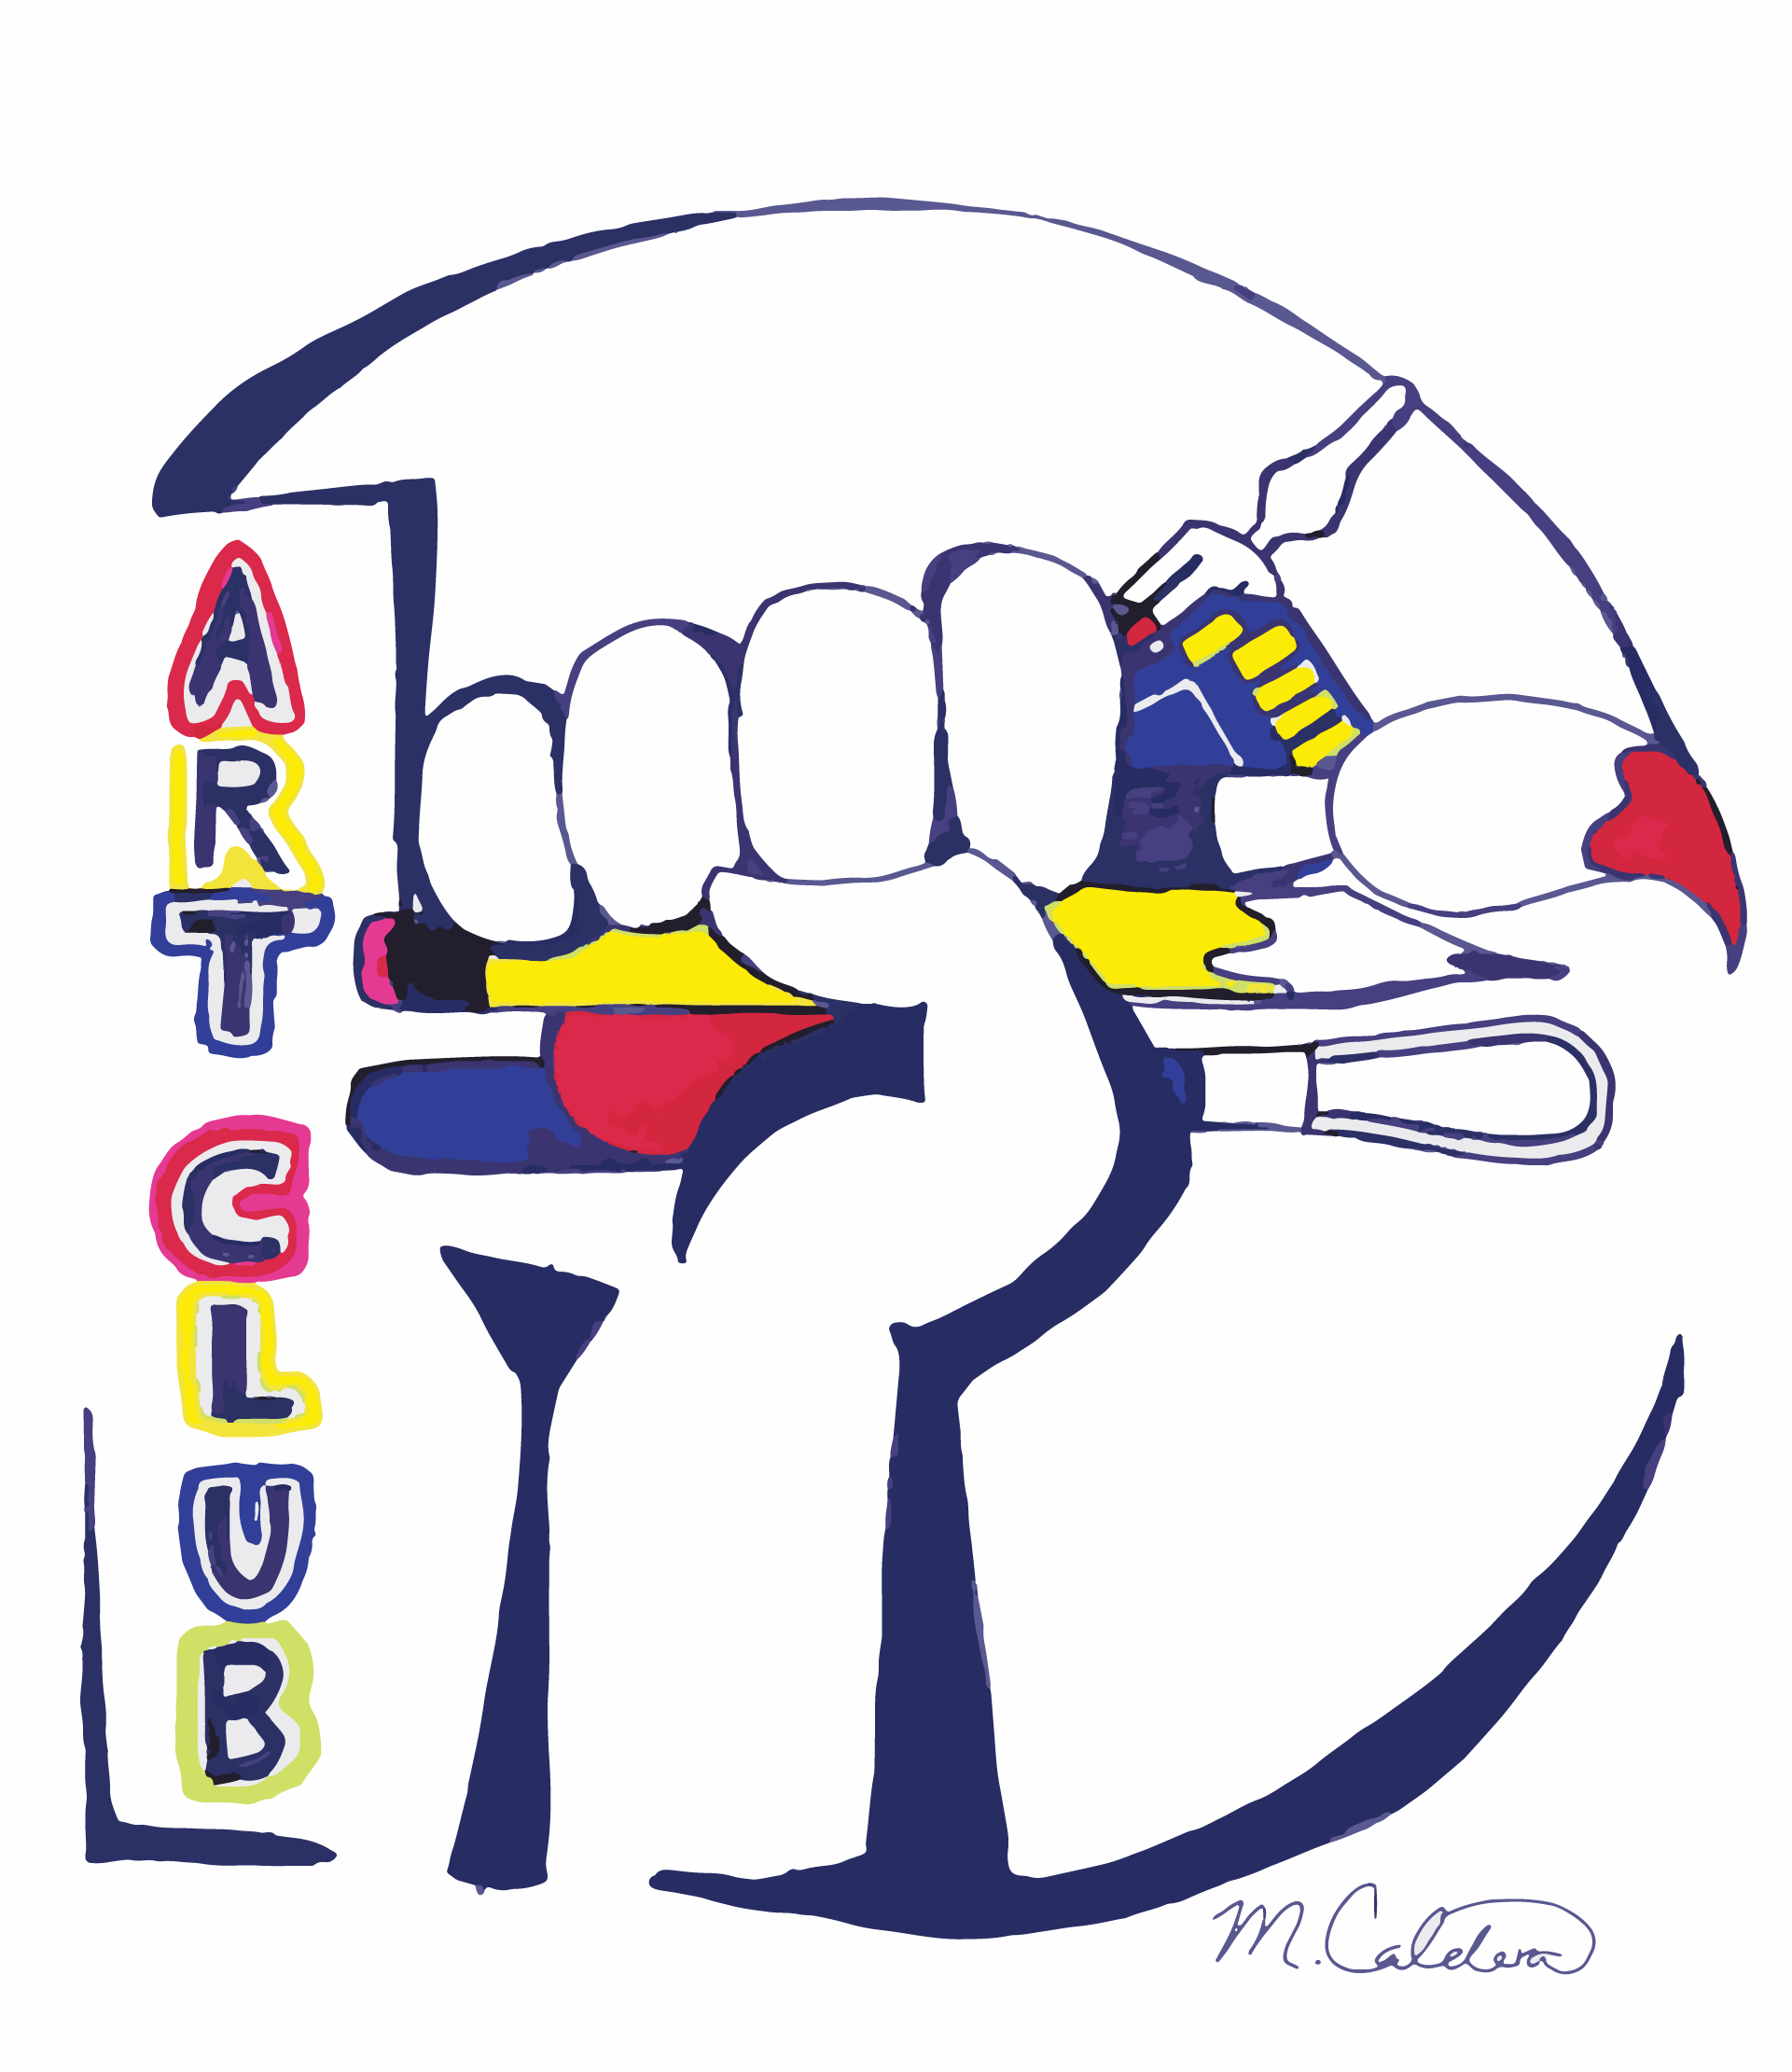 Art Club Logo